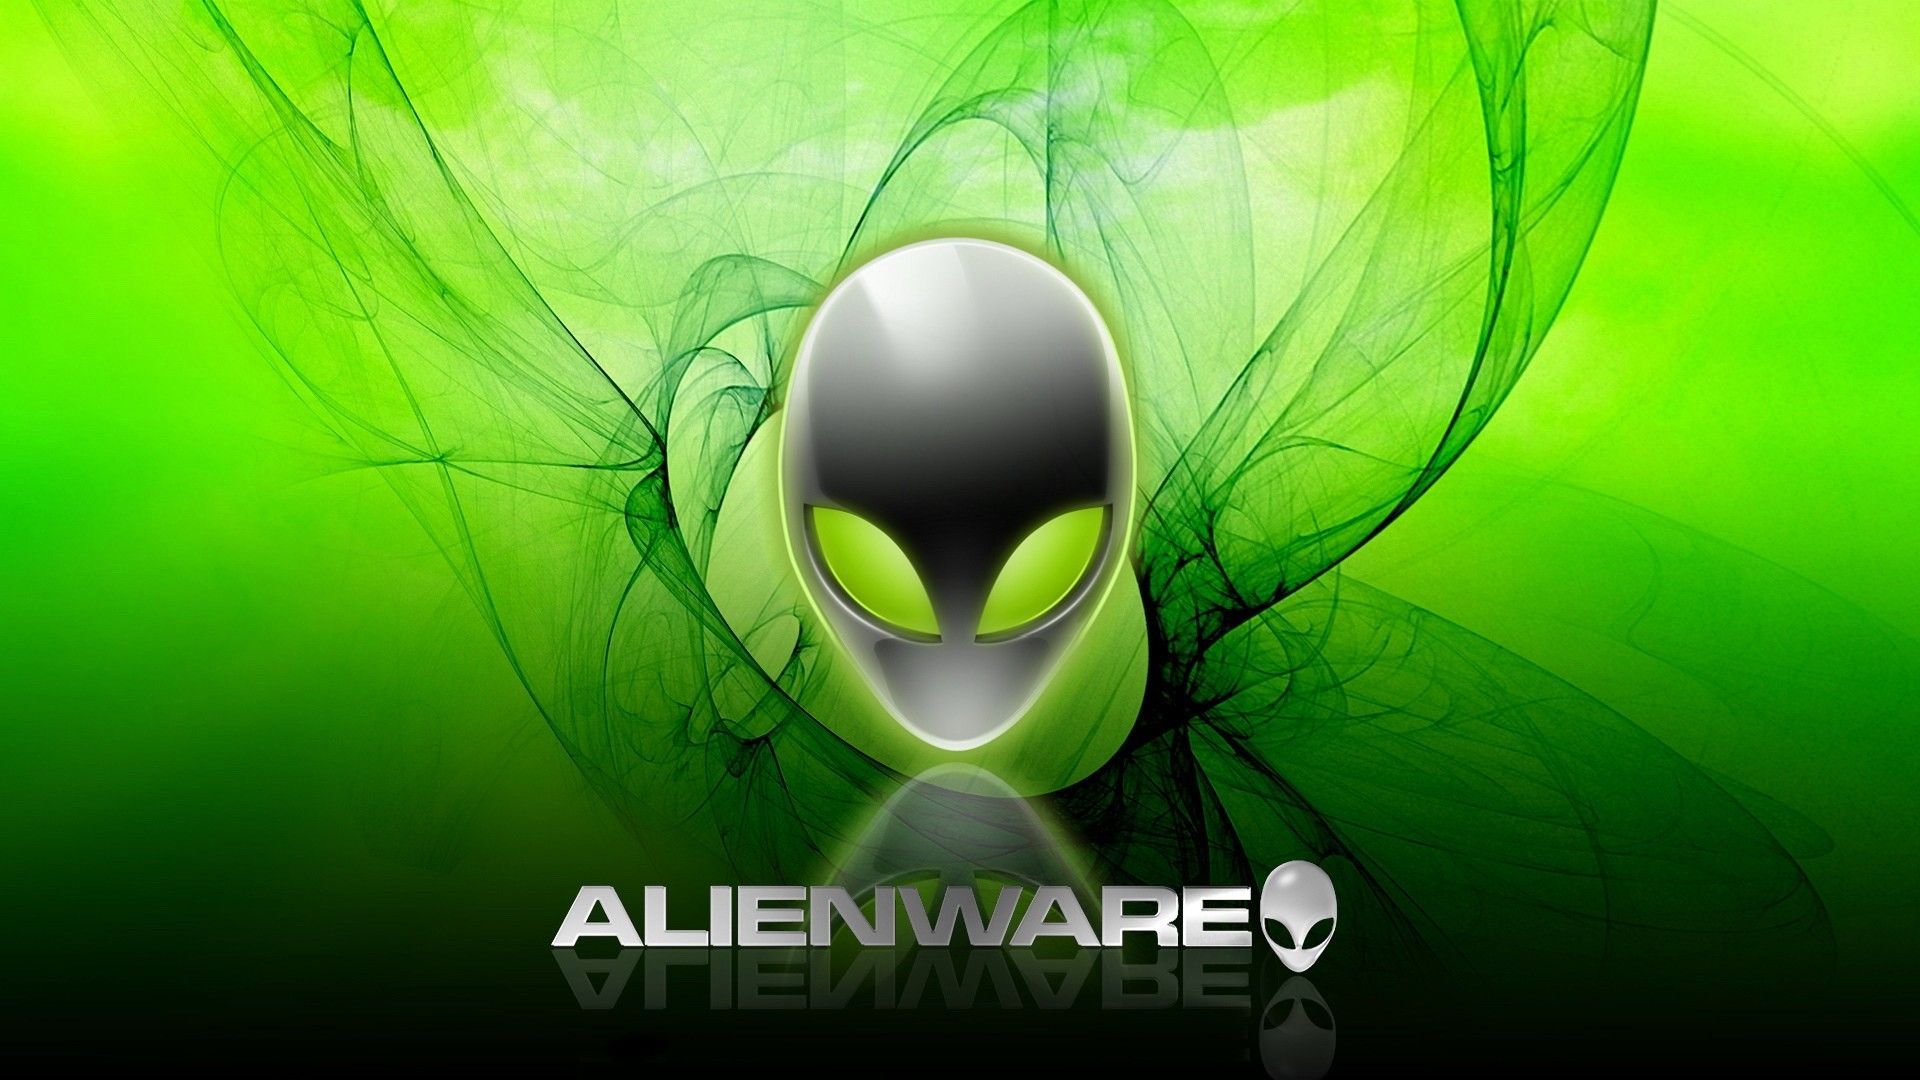 Alienware Desktop Background Alien Head Green Smoke 1920x1080. Alienware desktop, Background desktop, Computer wallpaper hd